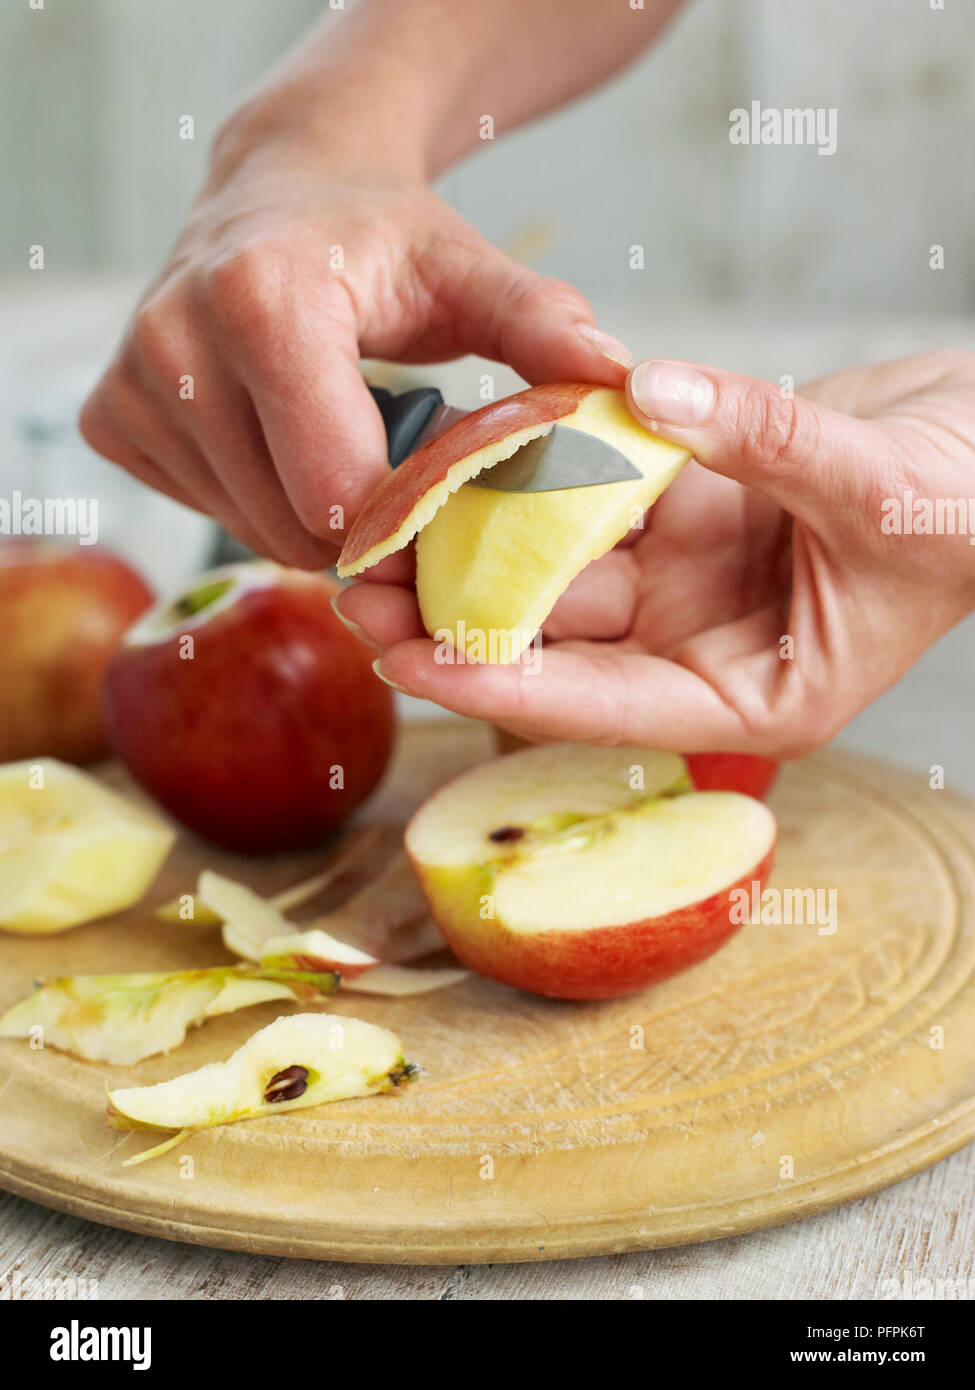 Äpfel schälen, mit Messer Stockfotografie - Alamy